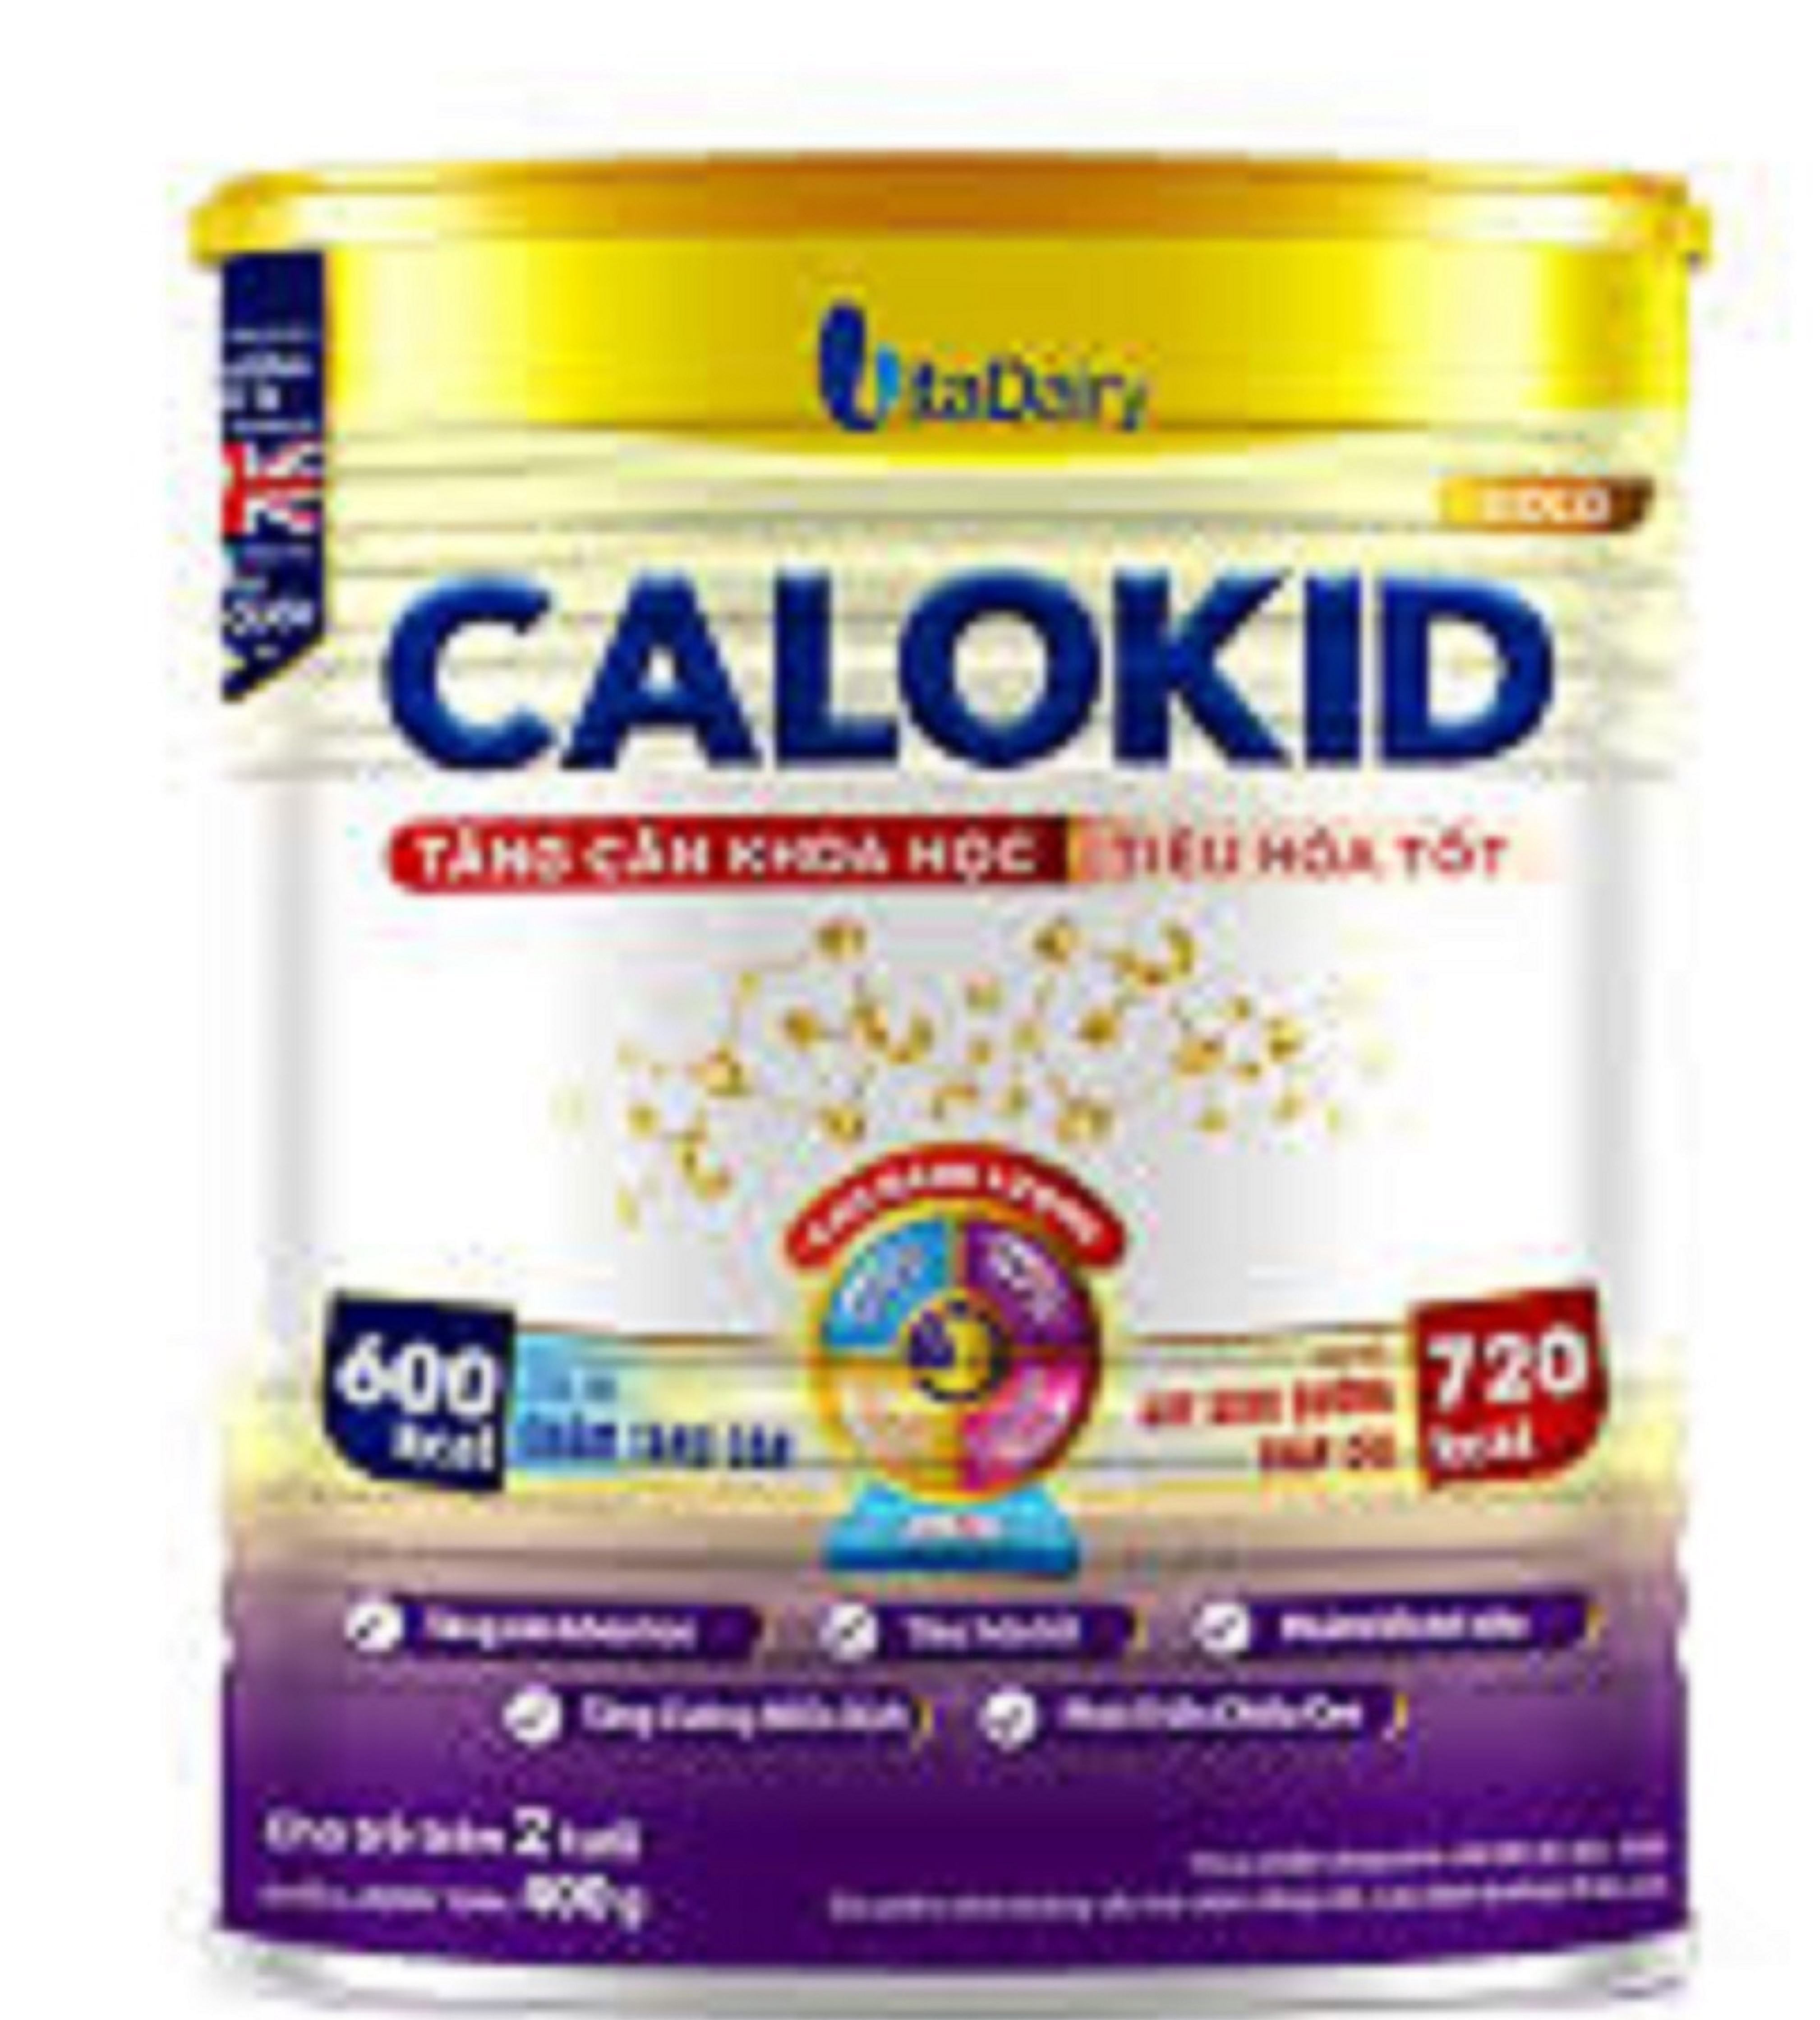 Sữa Calokid Gold 900g (trẻ biếng ăn 1 – 10 tuổi)